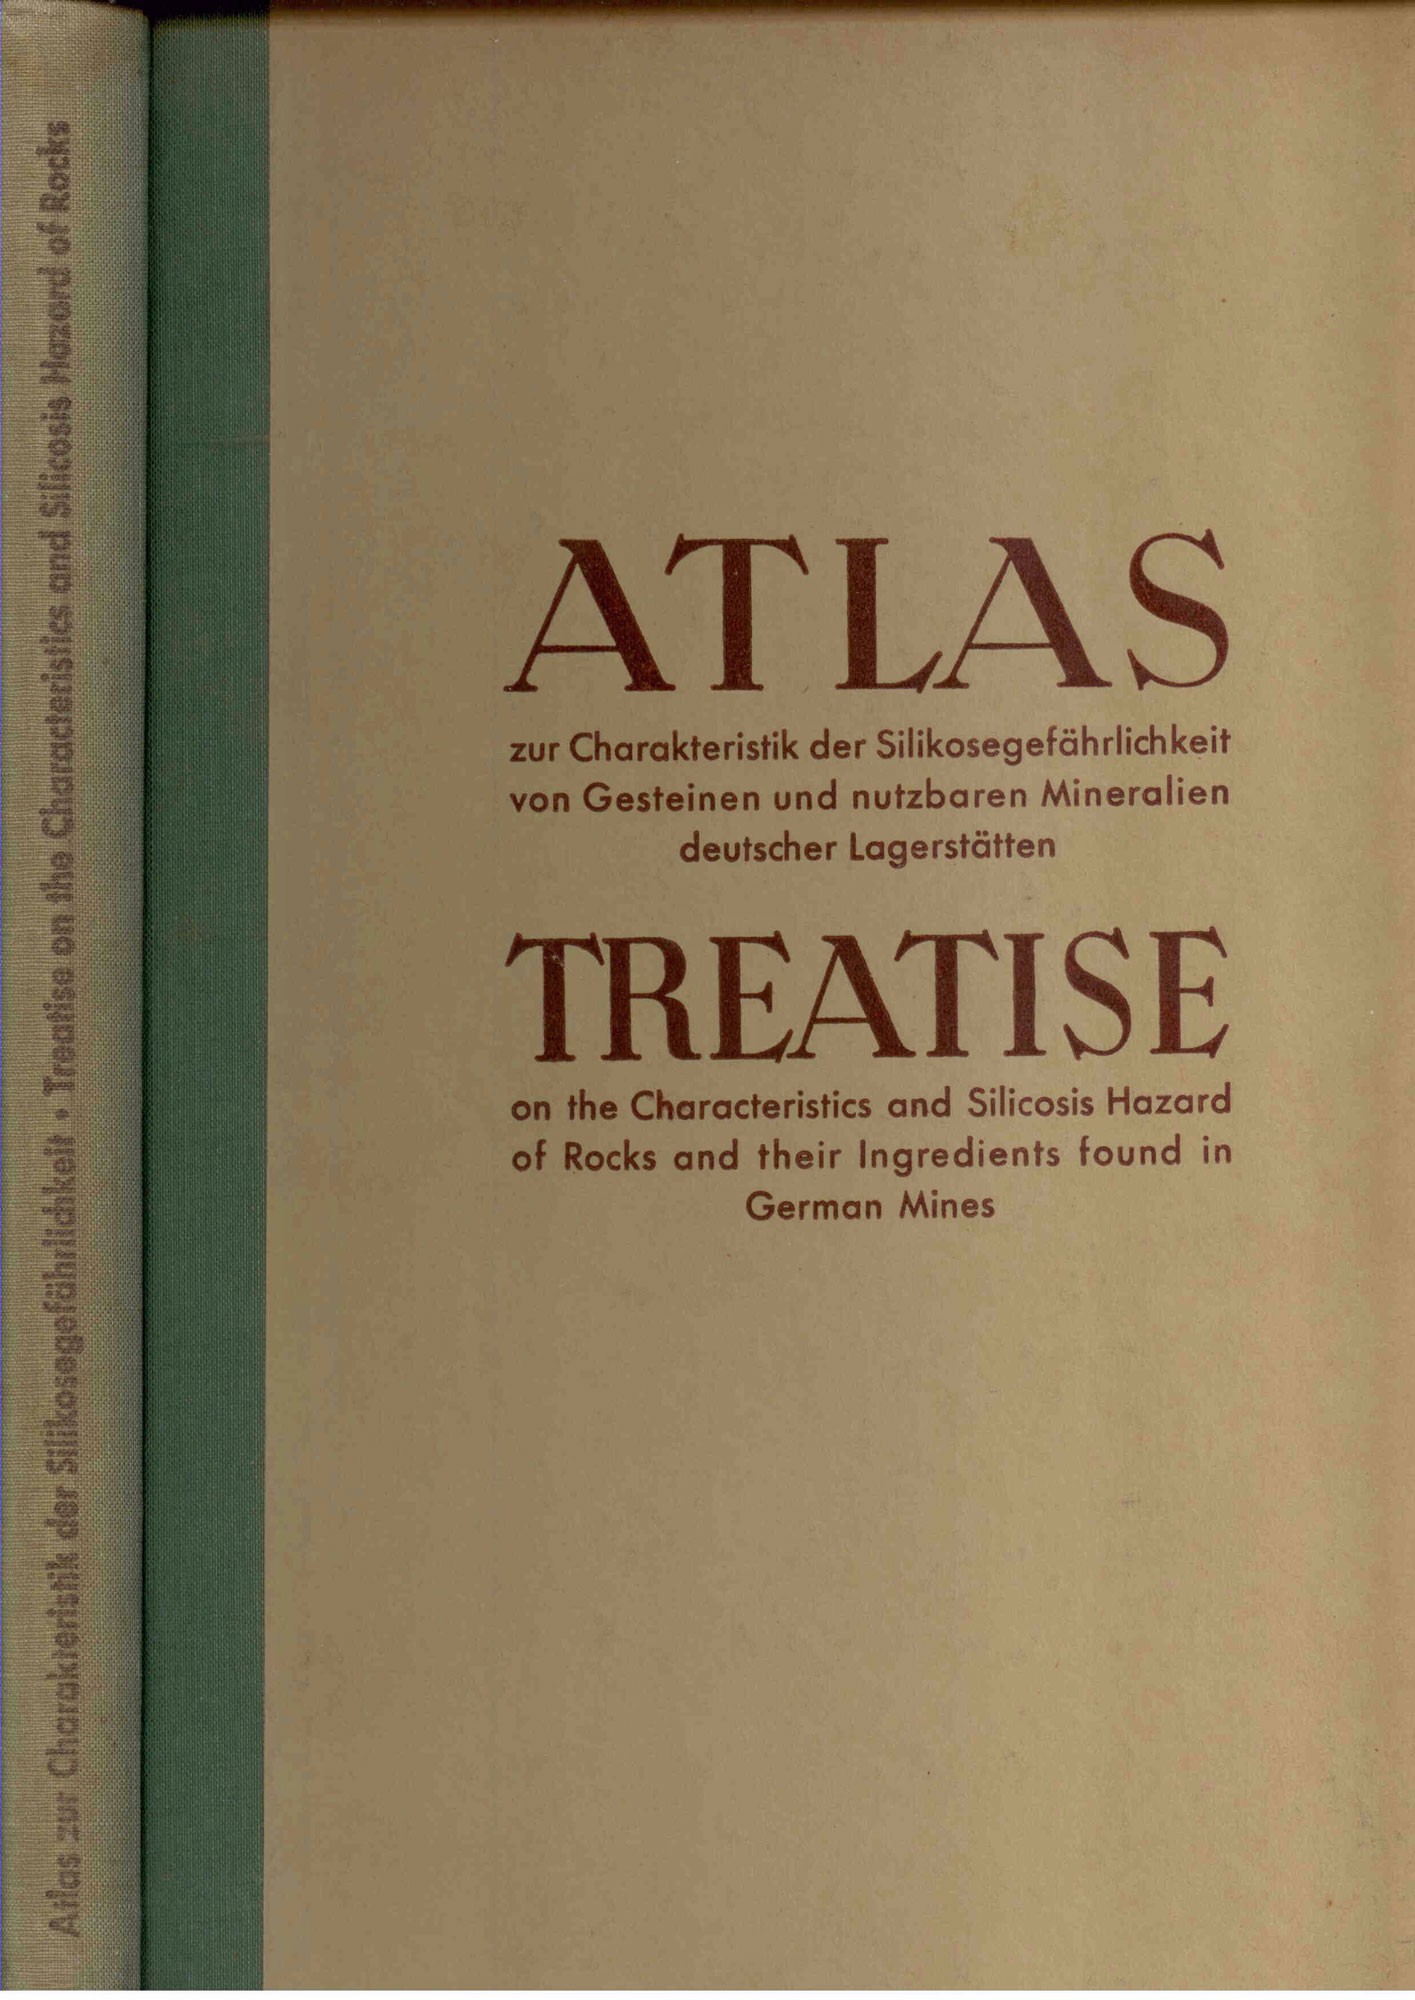 Atlas zur Charakteristik der Silikosegefährlichkeit von Gesteinen und nutzbaren Mineralien deutscher Lagerstätten